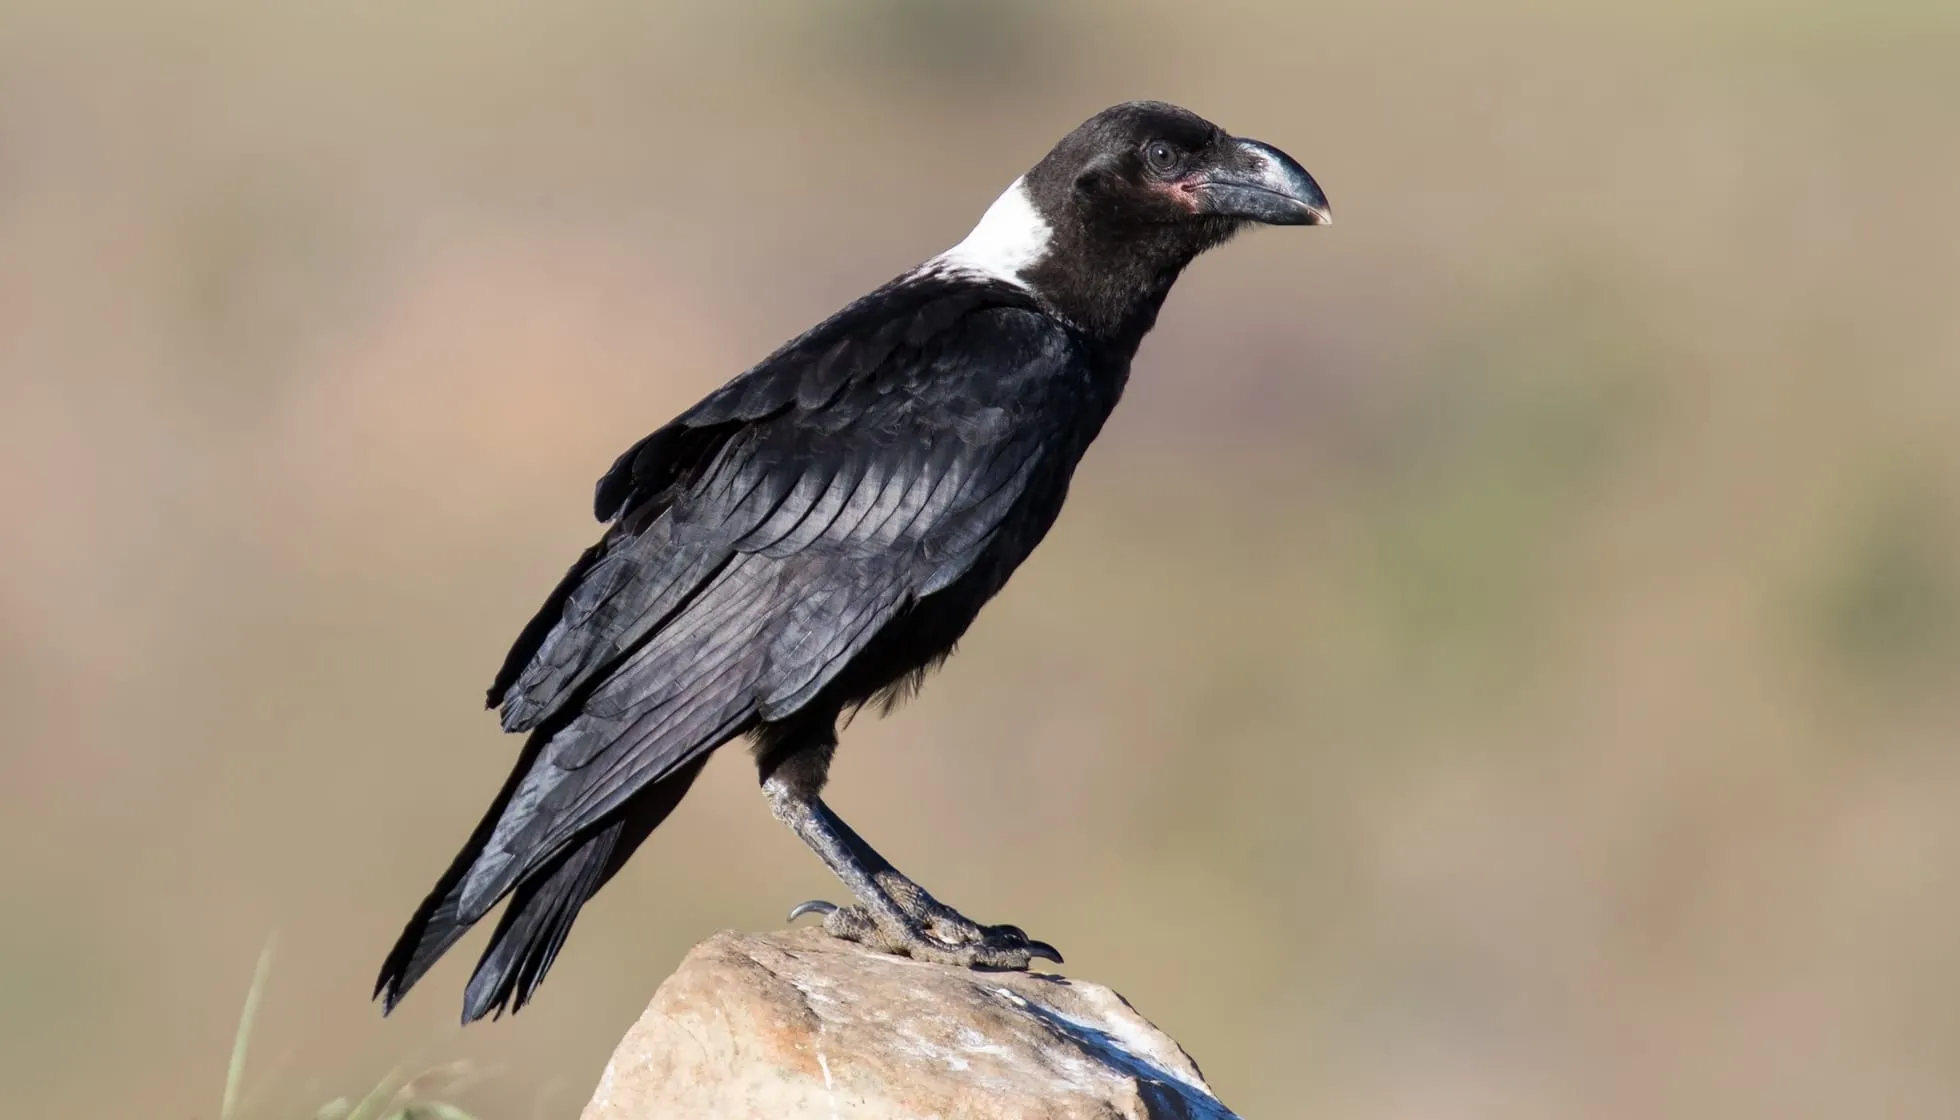 White-Necked Raven on a rock